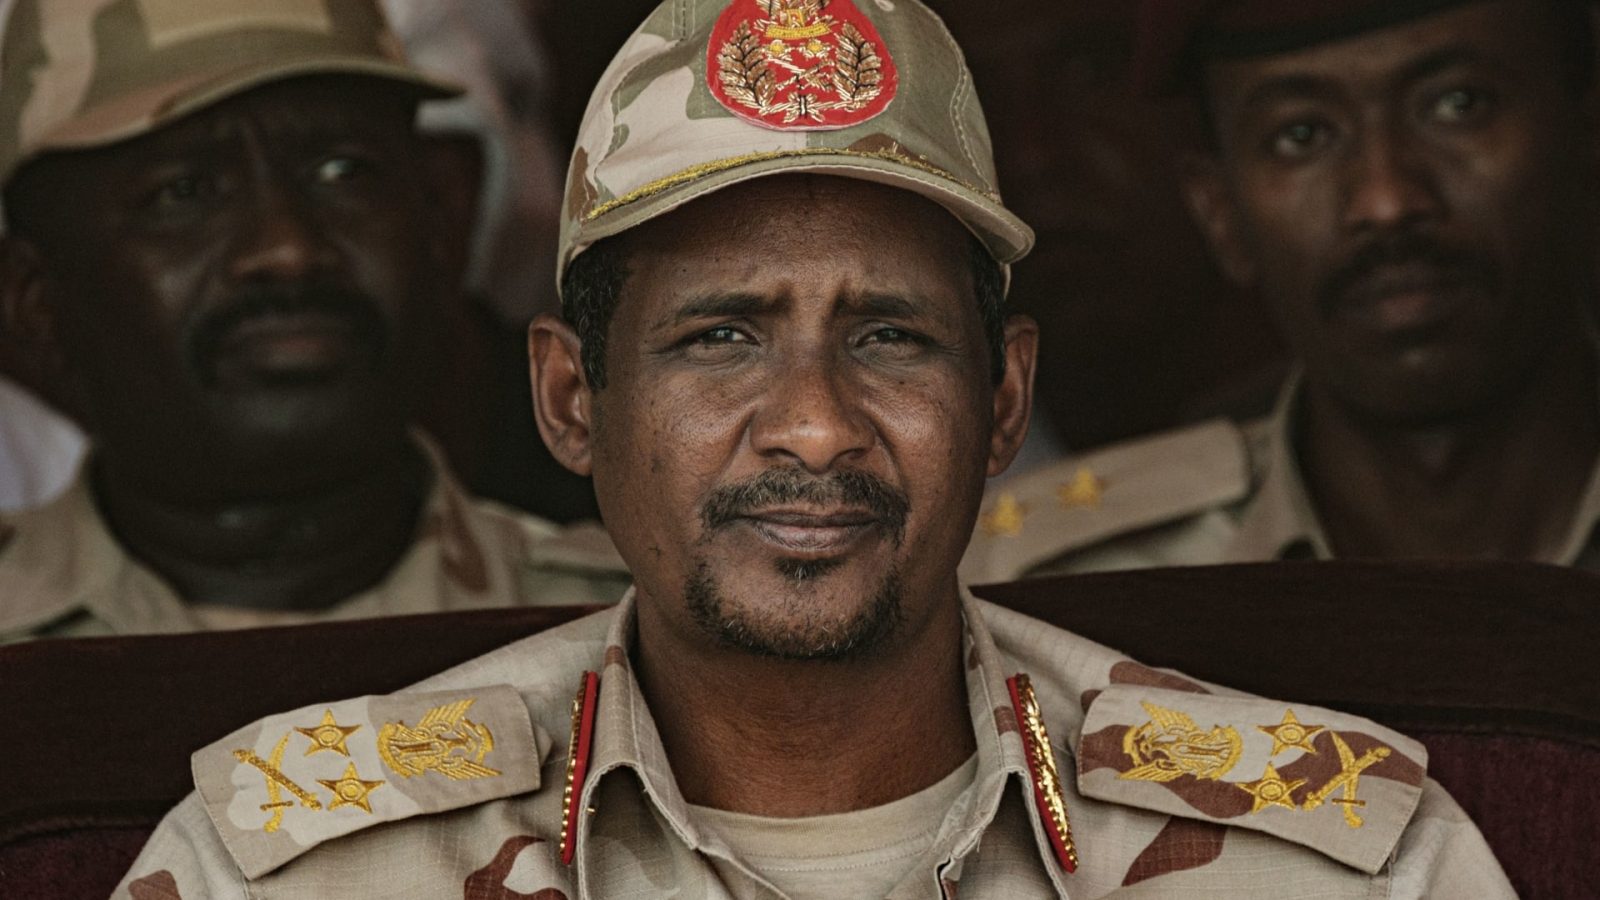 السودان/ قوات الدعم السريع تؤكد استعدادها لوقف إطلاق النار